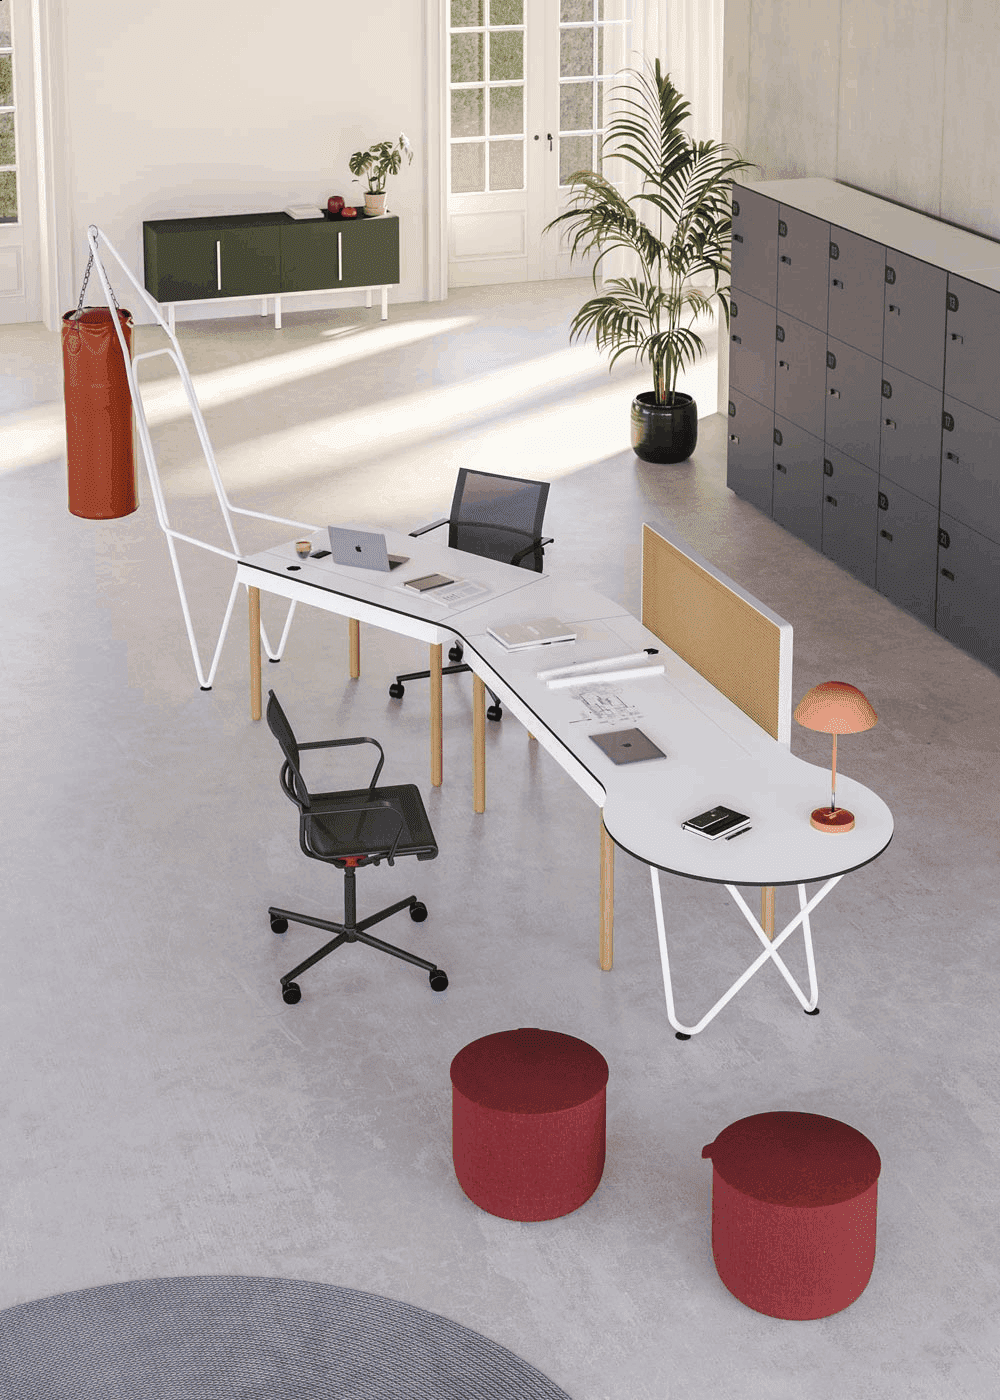 Design chic pour le mobilier du bureau